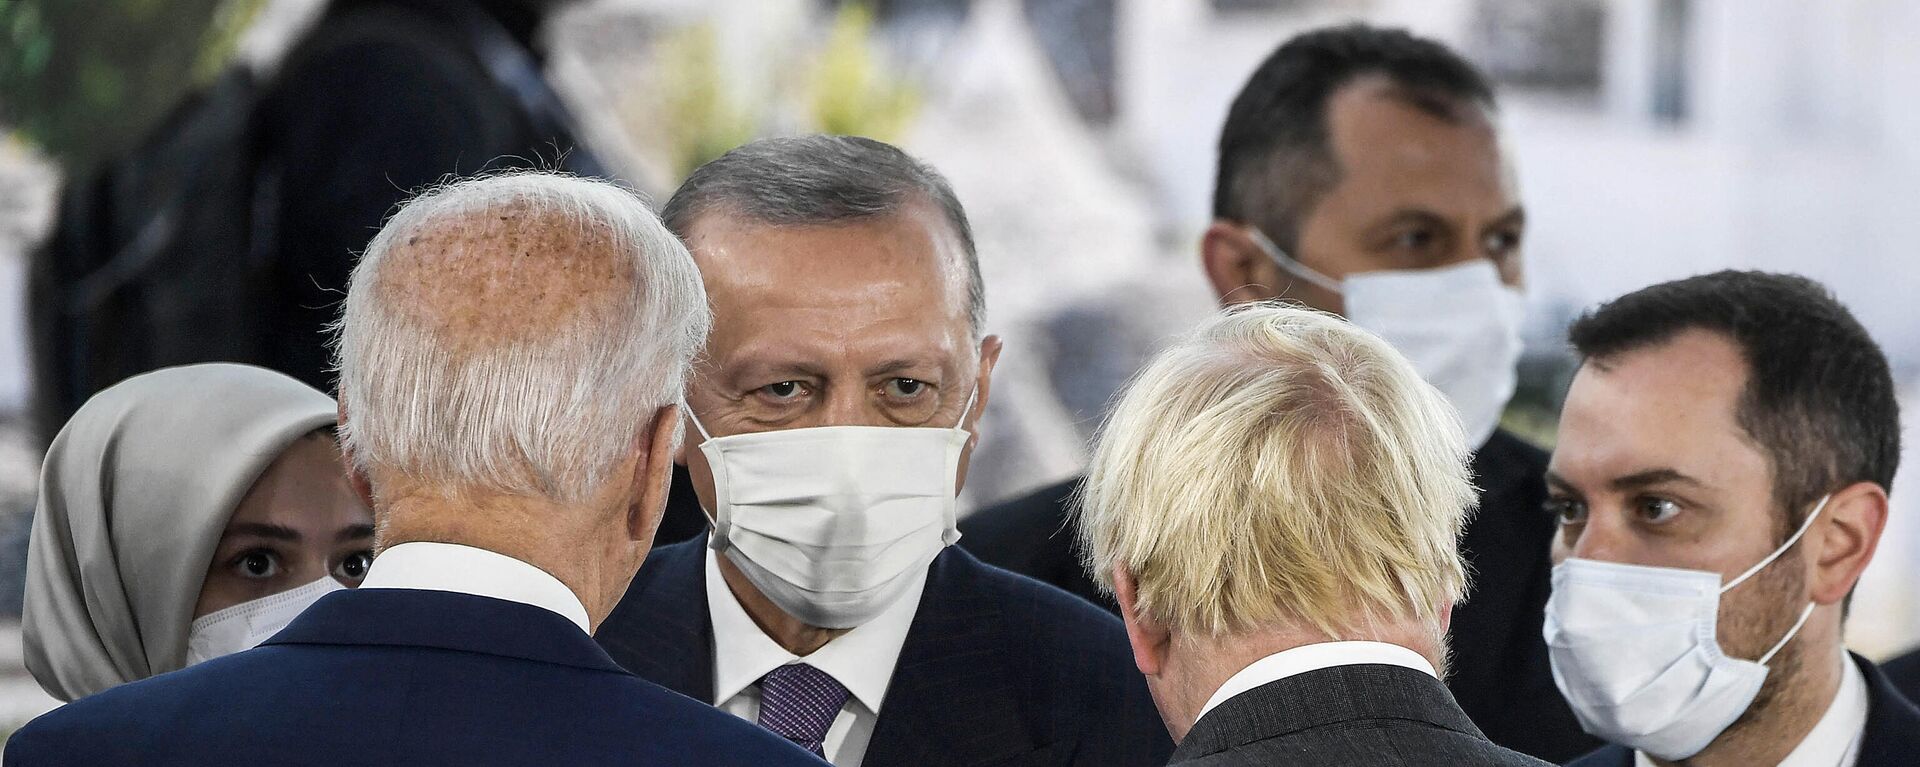 Президент Турции Реджеп Тайип Эрдоган беседует с президентом США Джо Байденом и премьер-министром Великобритании Борисом Джонсоном во время саммита лидеров G20 в Риме  - Sputnik Азербайджан, 1920, 01.11.2021